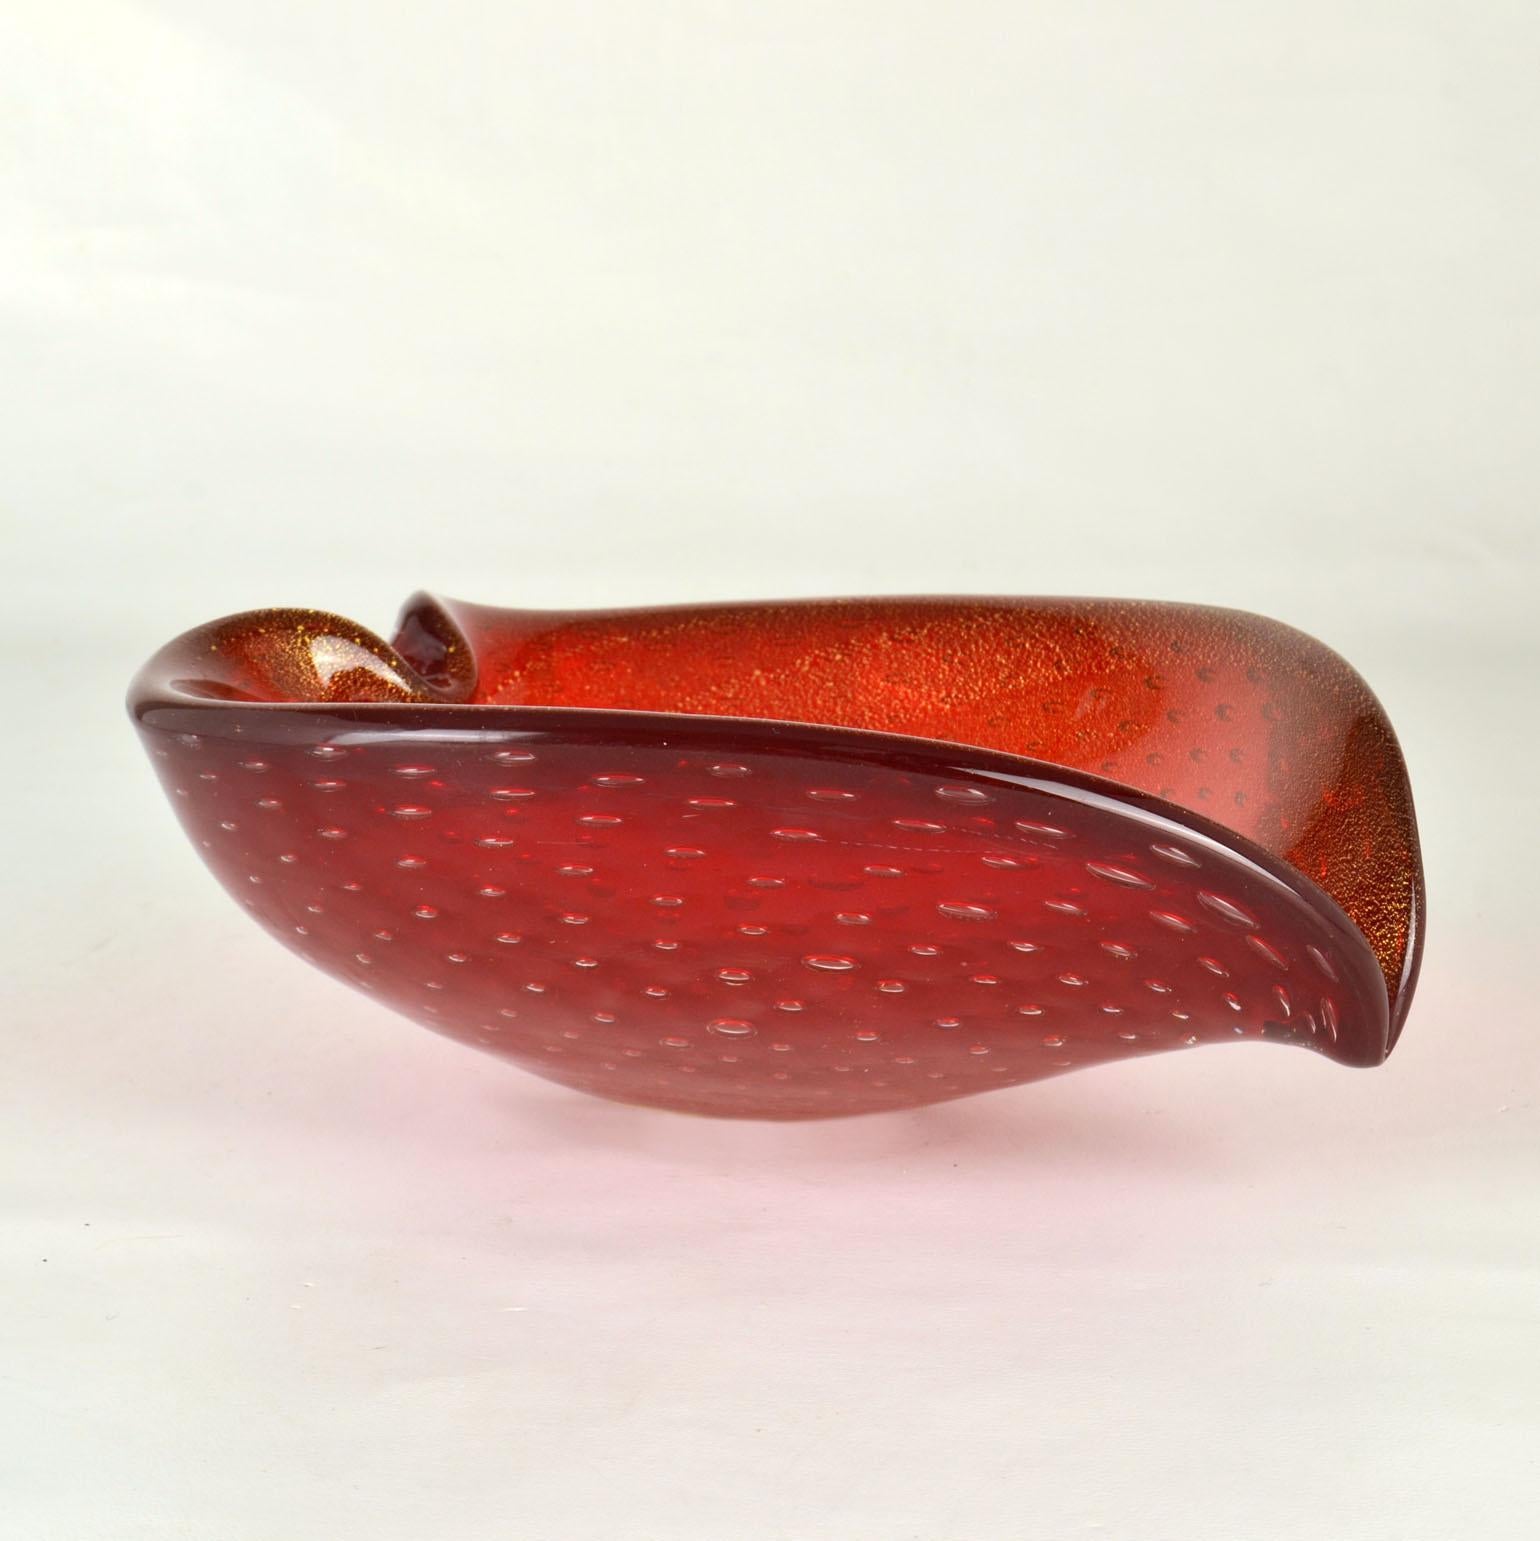 Blattförmige Glasschale von Flavio Poli für Seguso aus den 1960er Jahren in tiefem Rot und Gold. Die Schale ist mundgeblasen, bekannt als venezianischer Sommerso, hergestellt in Murano, Venedig, Italien. 
Die Schale ist eine Kombination aus tiefem